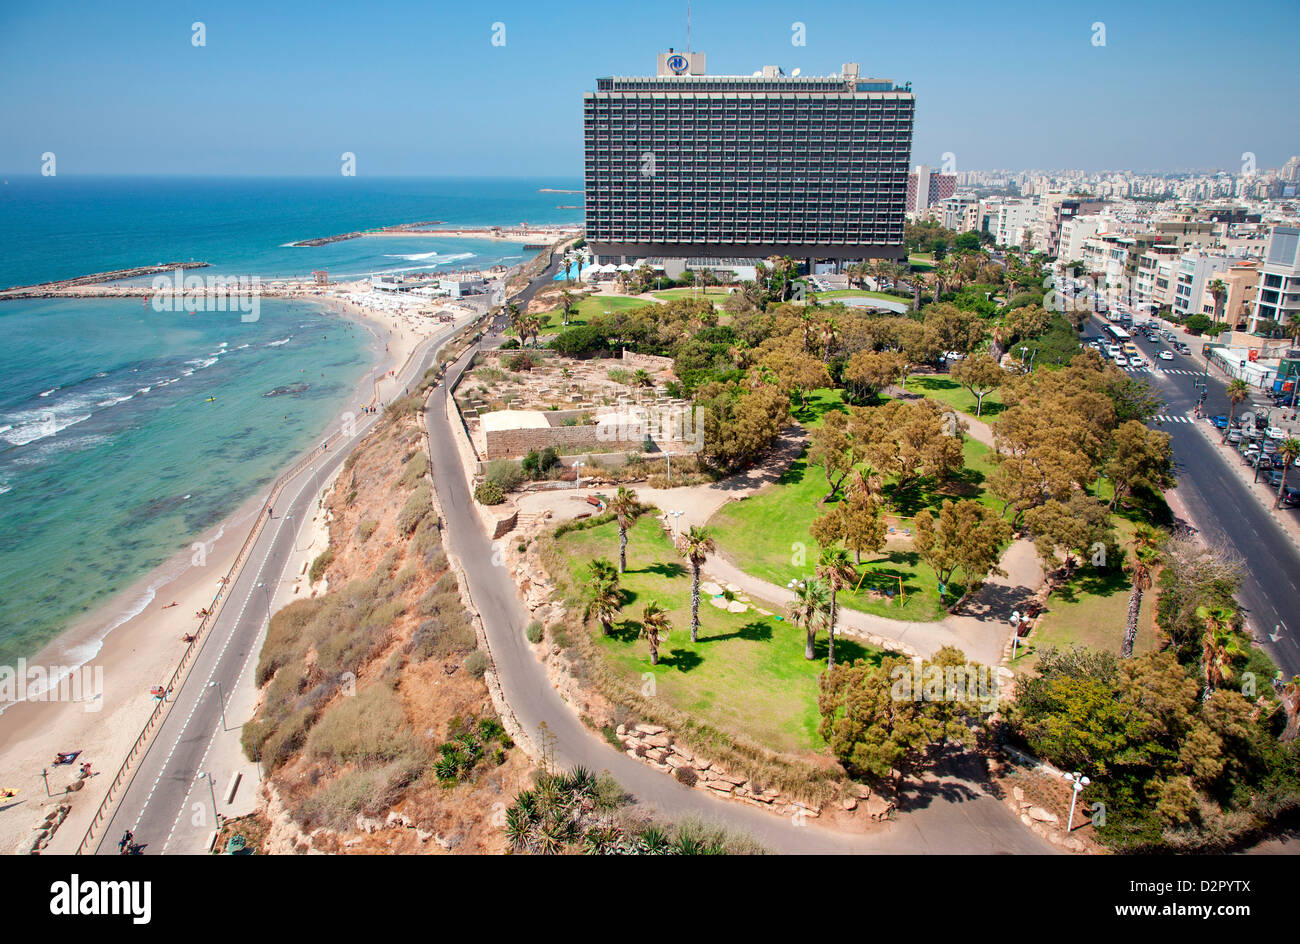 Hilton Hotel et l'indépendance, Parc Hayarkon Street, Tel Aviv, Israël, Moyen Orient Banque D'Images